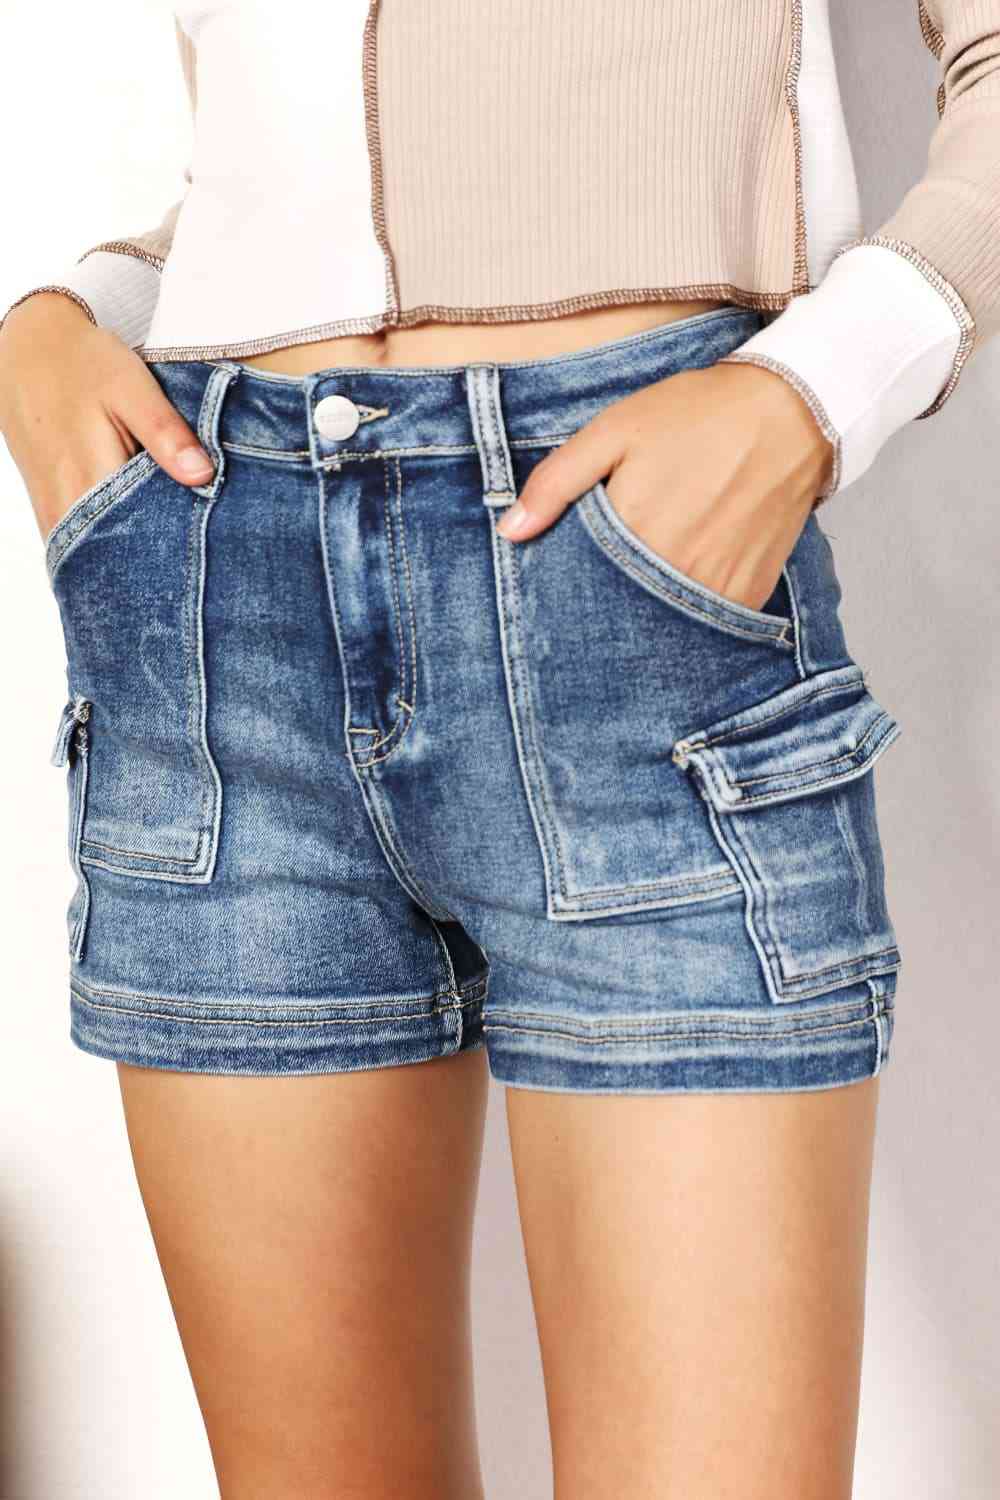 RISEN Shorts con bolsillo cargo lateral de talle alto y tamaño completo